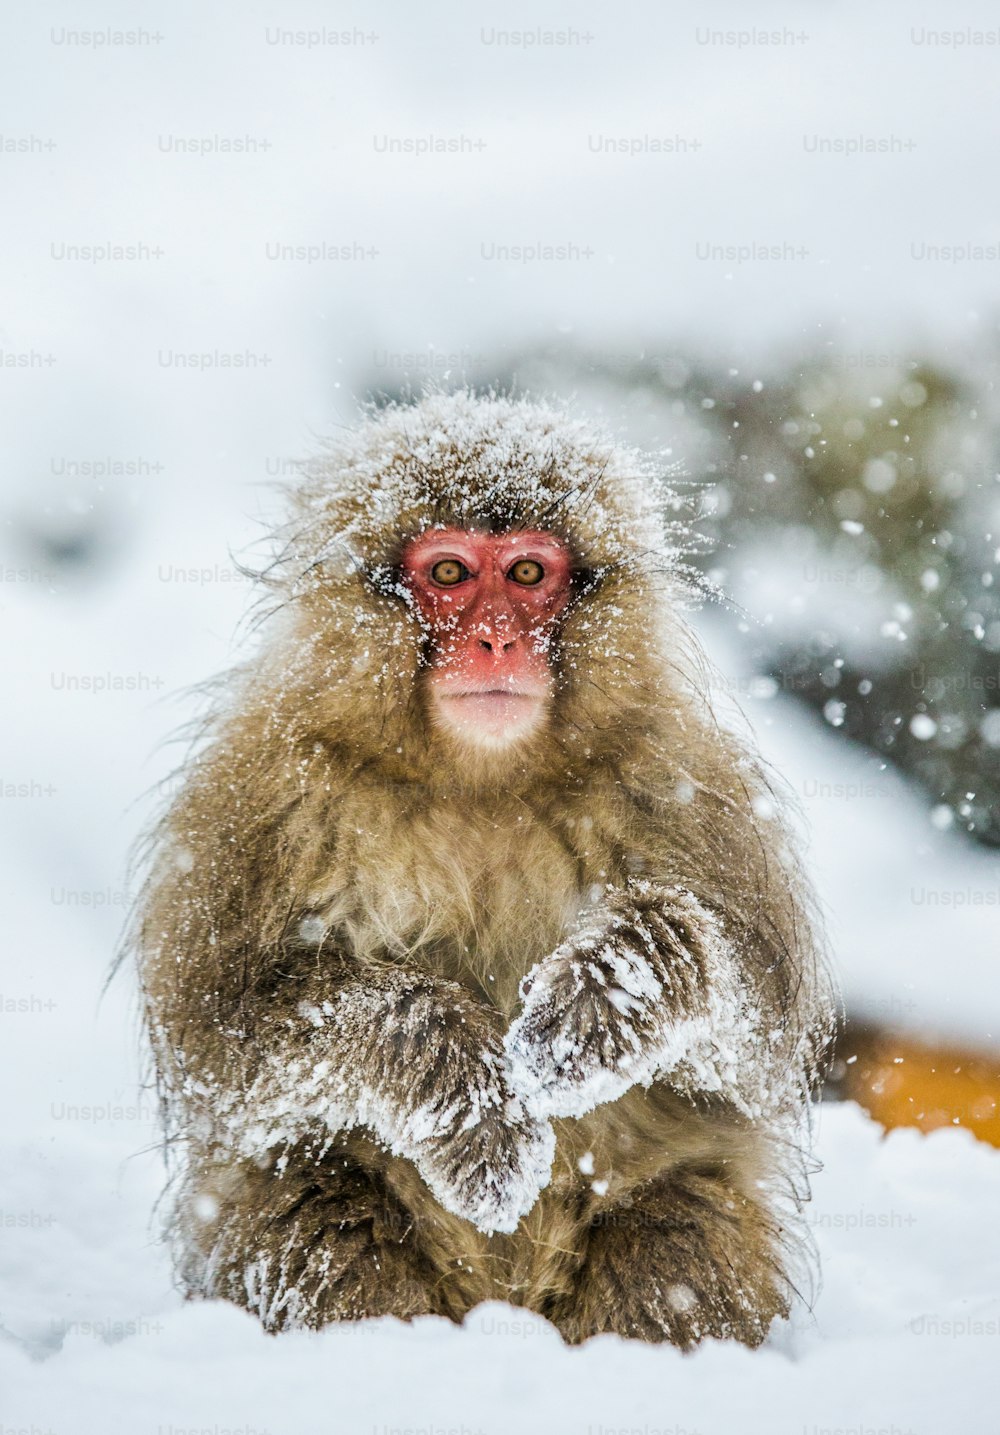 Japanischer Makake sitzt im Schnee. Japan. Nagano. Jigokudani Affenpark. Eine hervorragende Illustration.